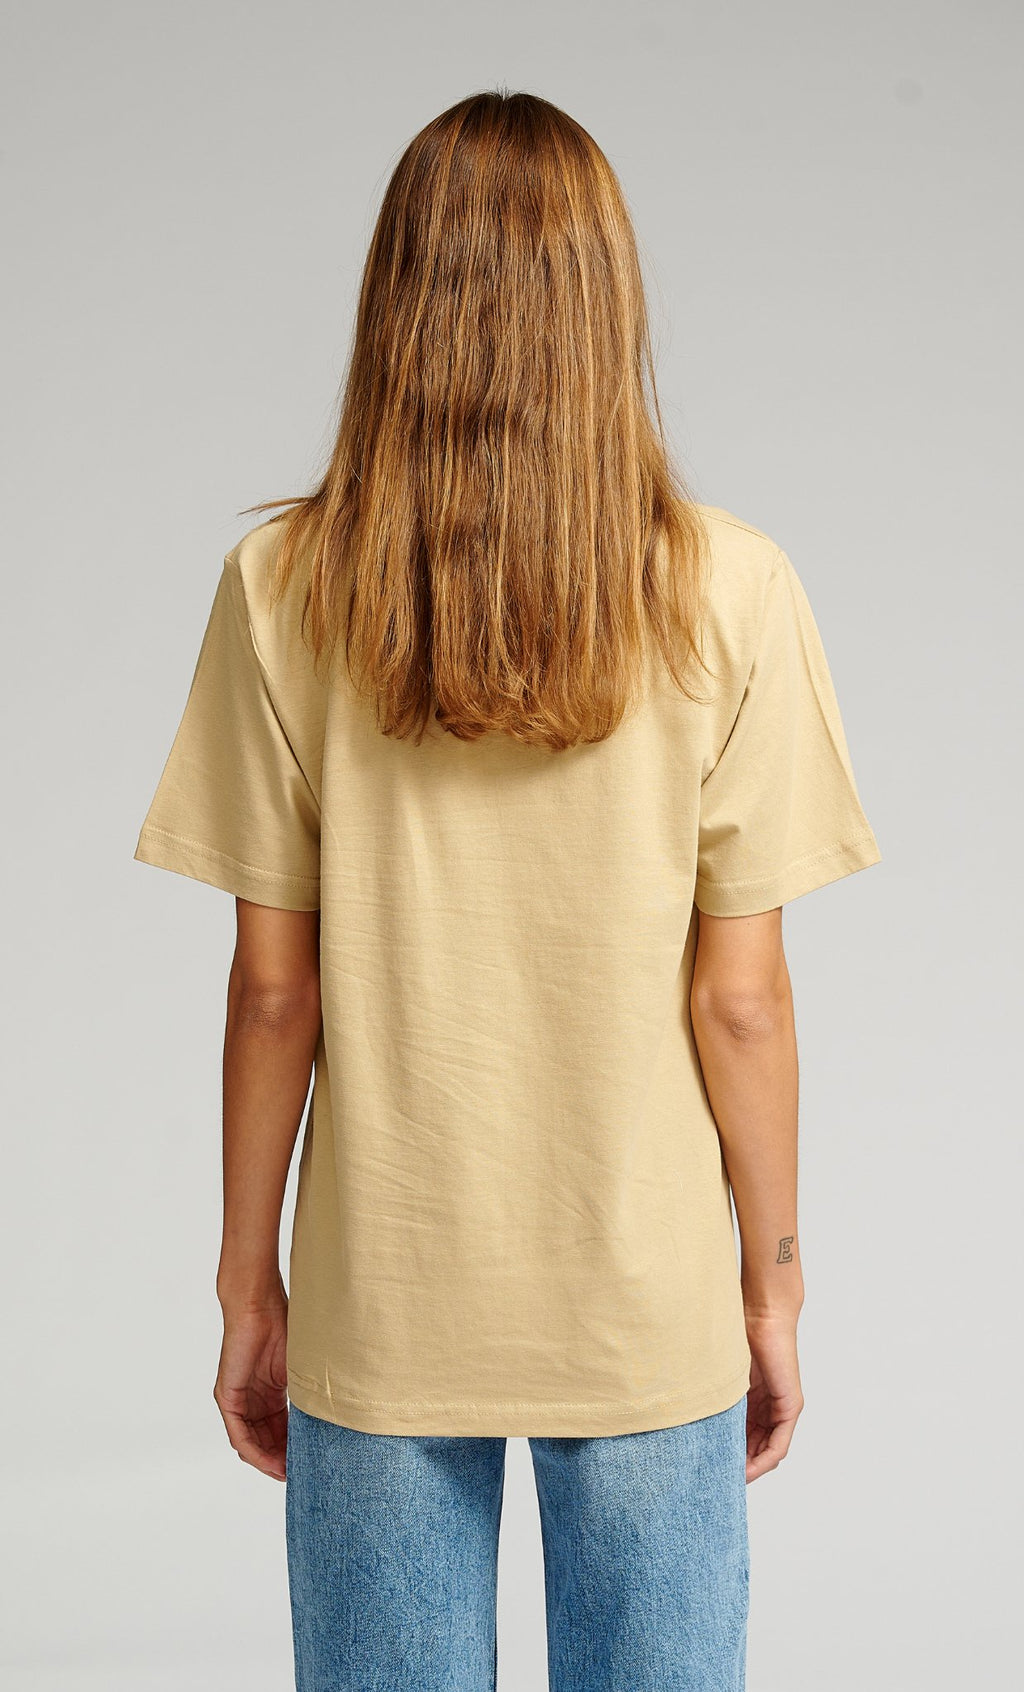 T-shirt surdimensionné - beige